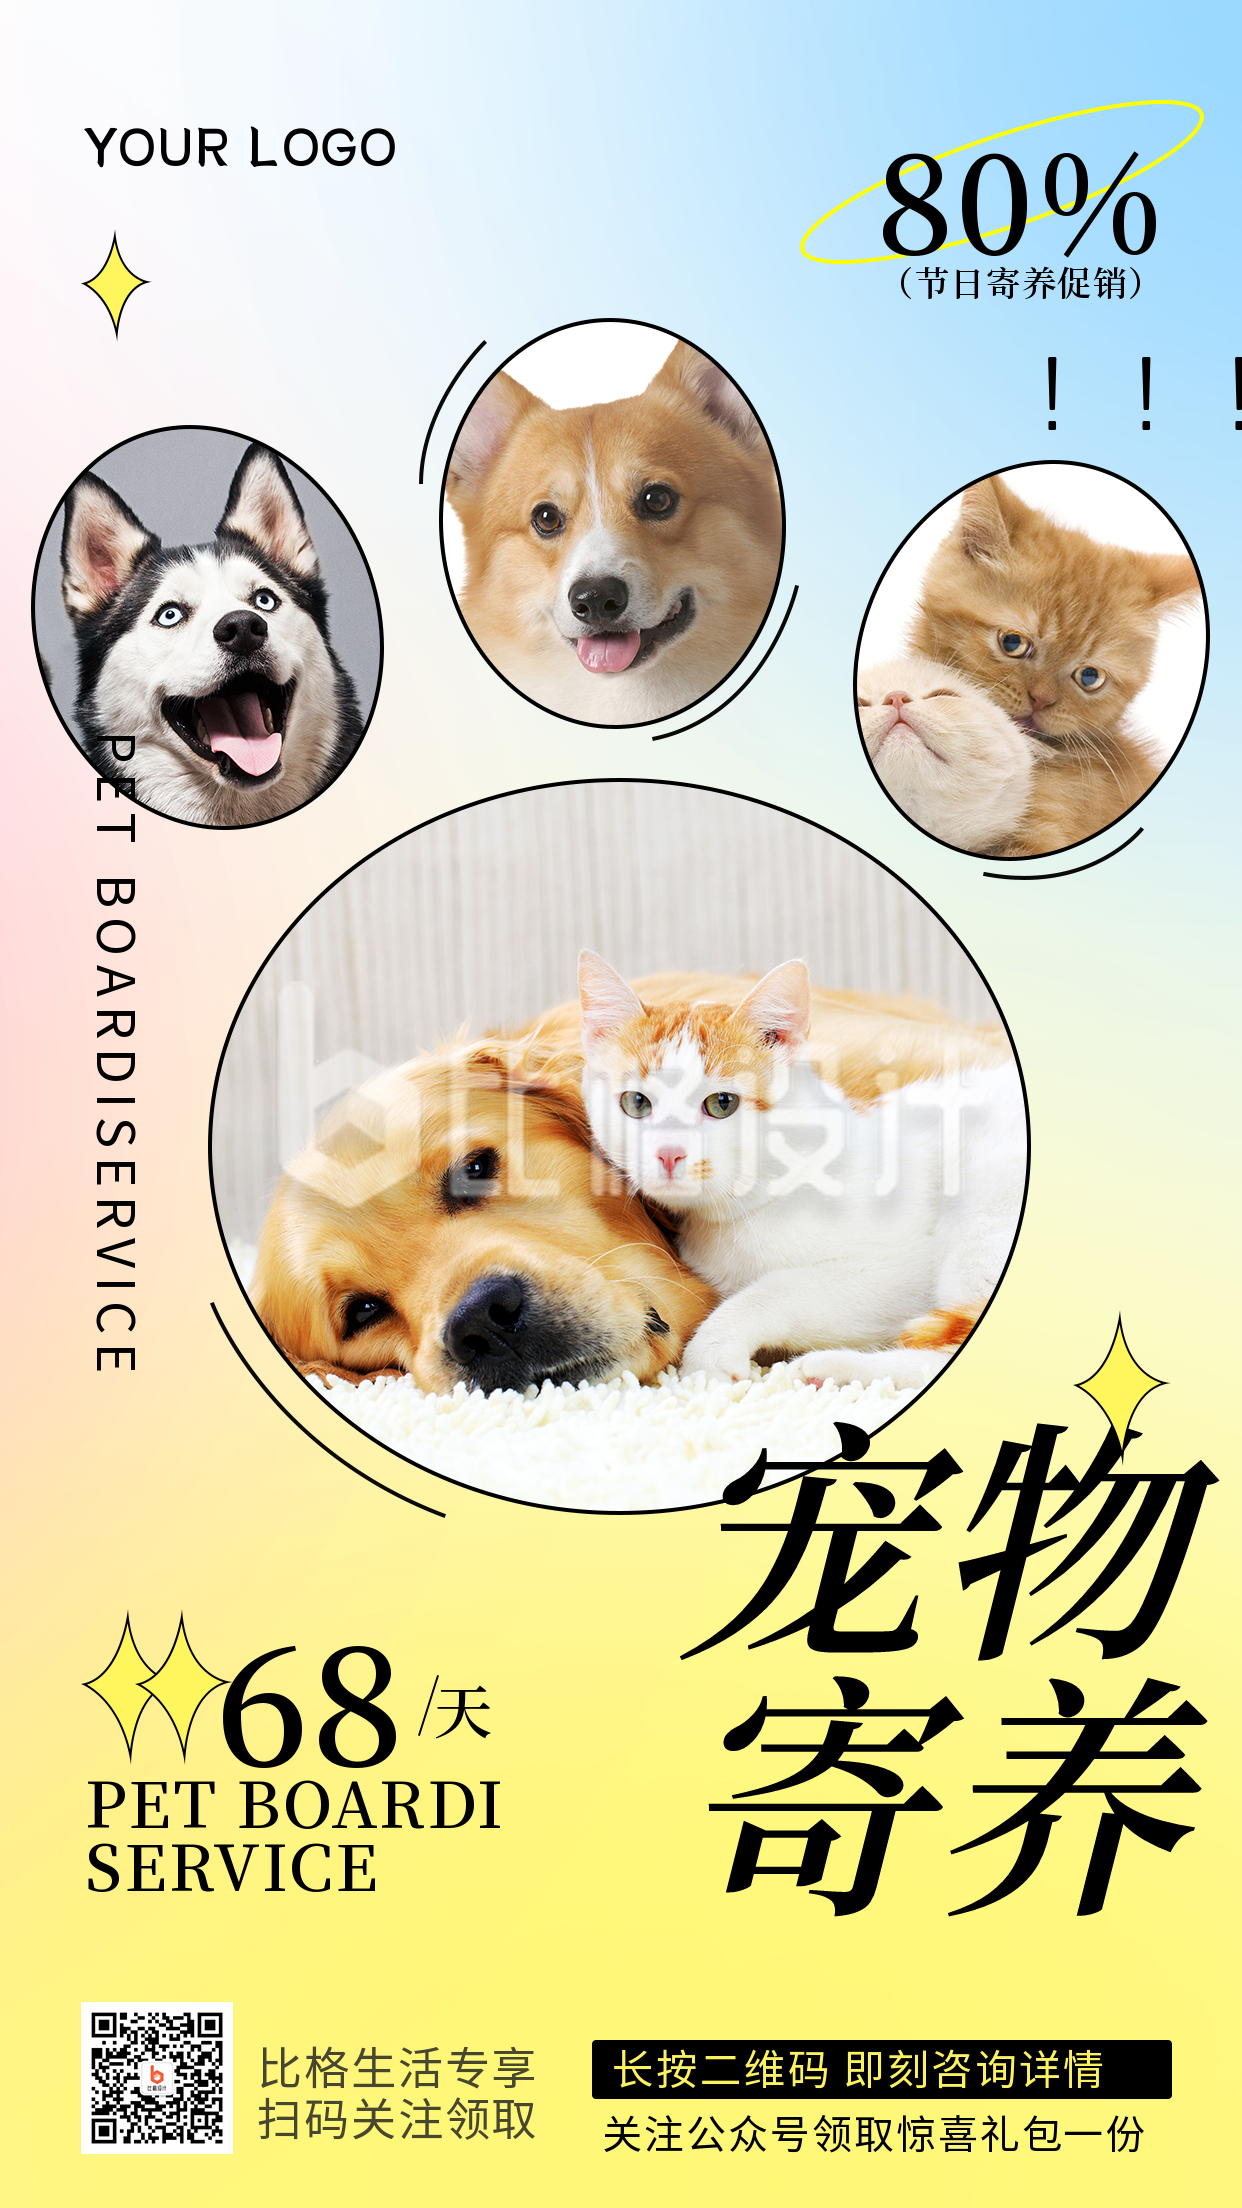 酸性宠物寄养活动优惠推广宣传手机海报